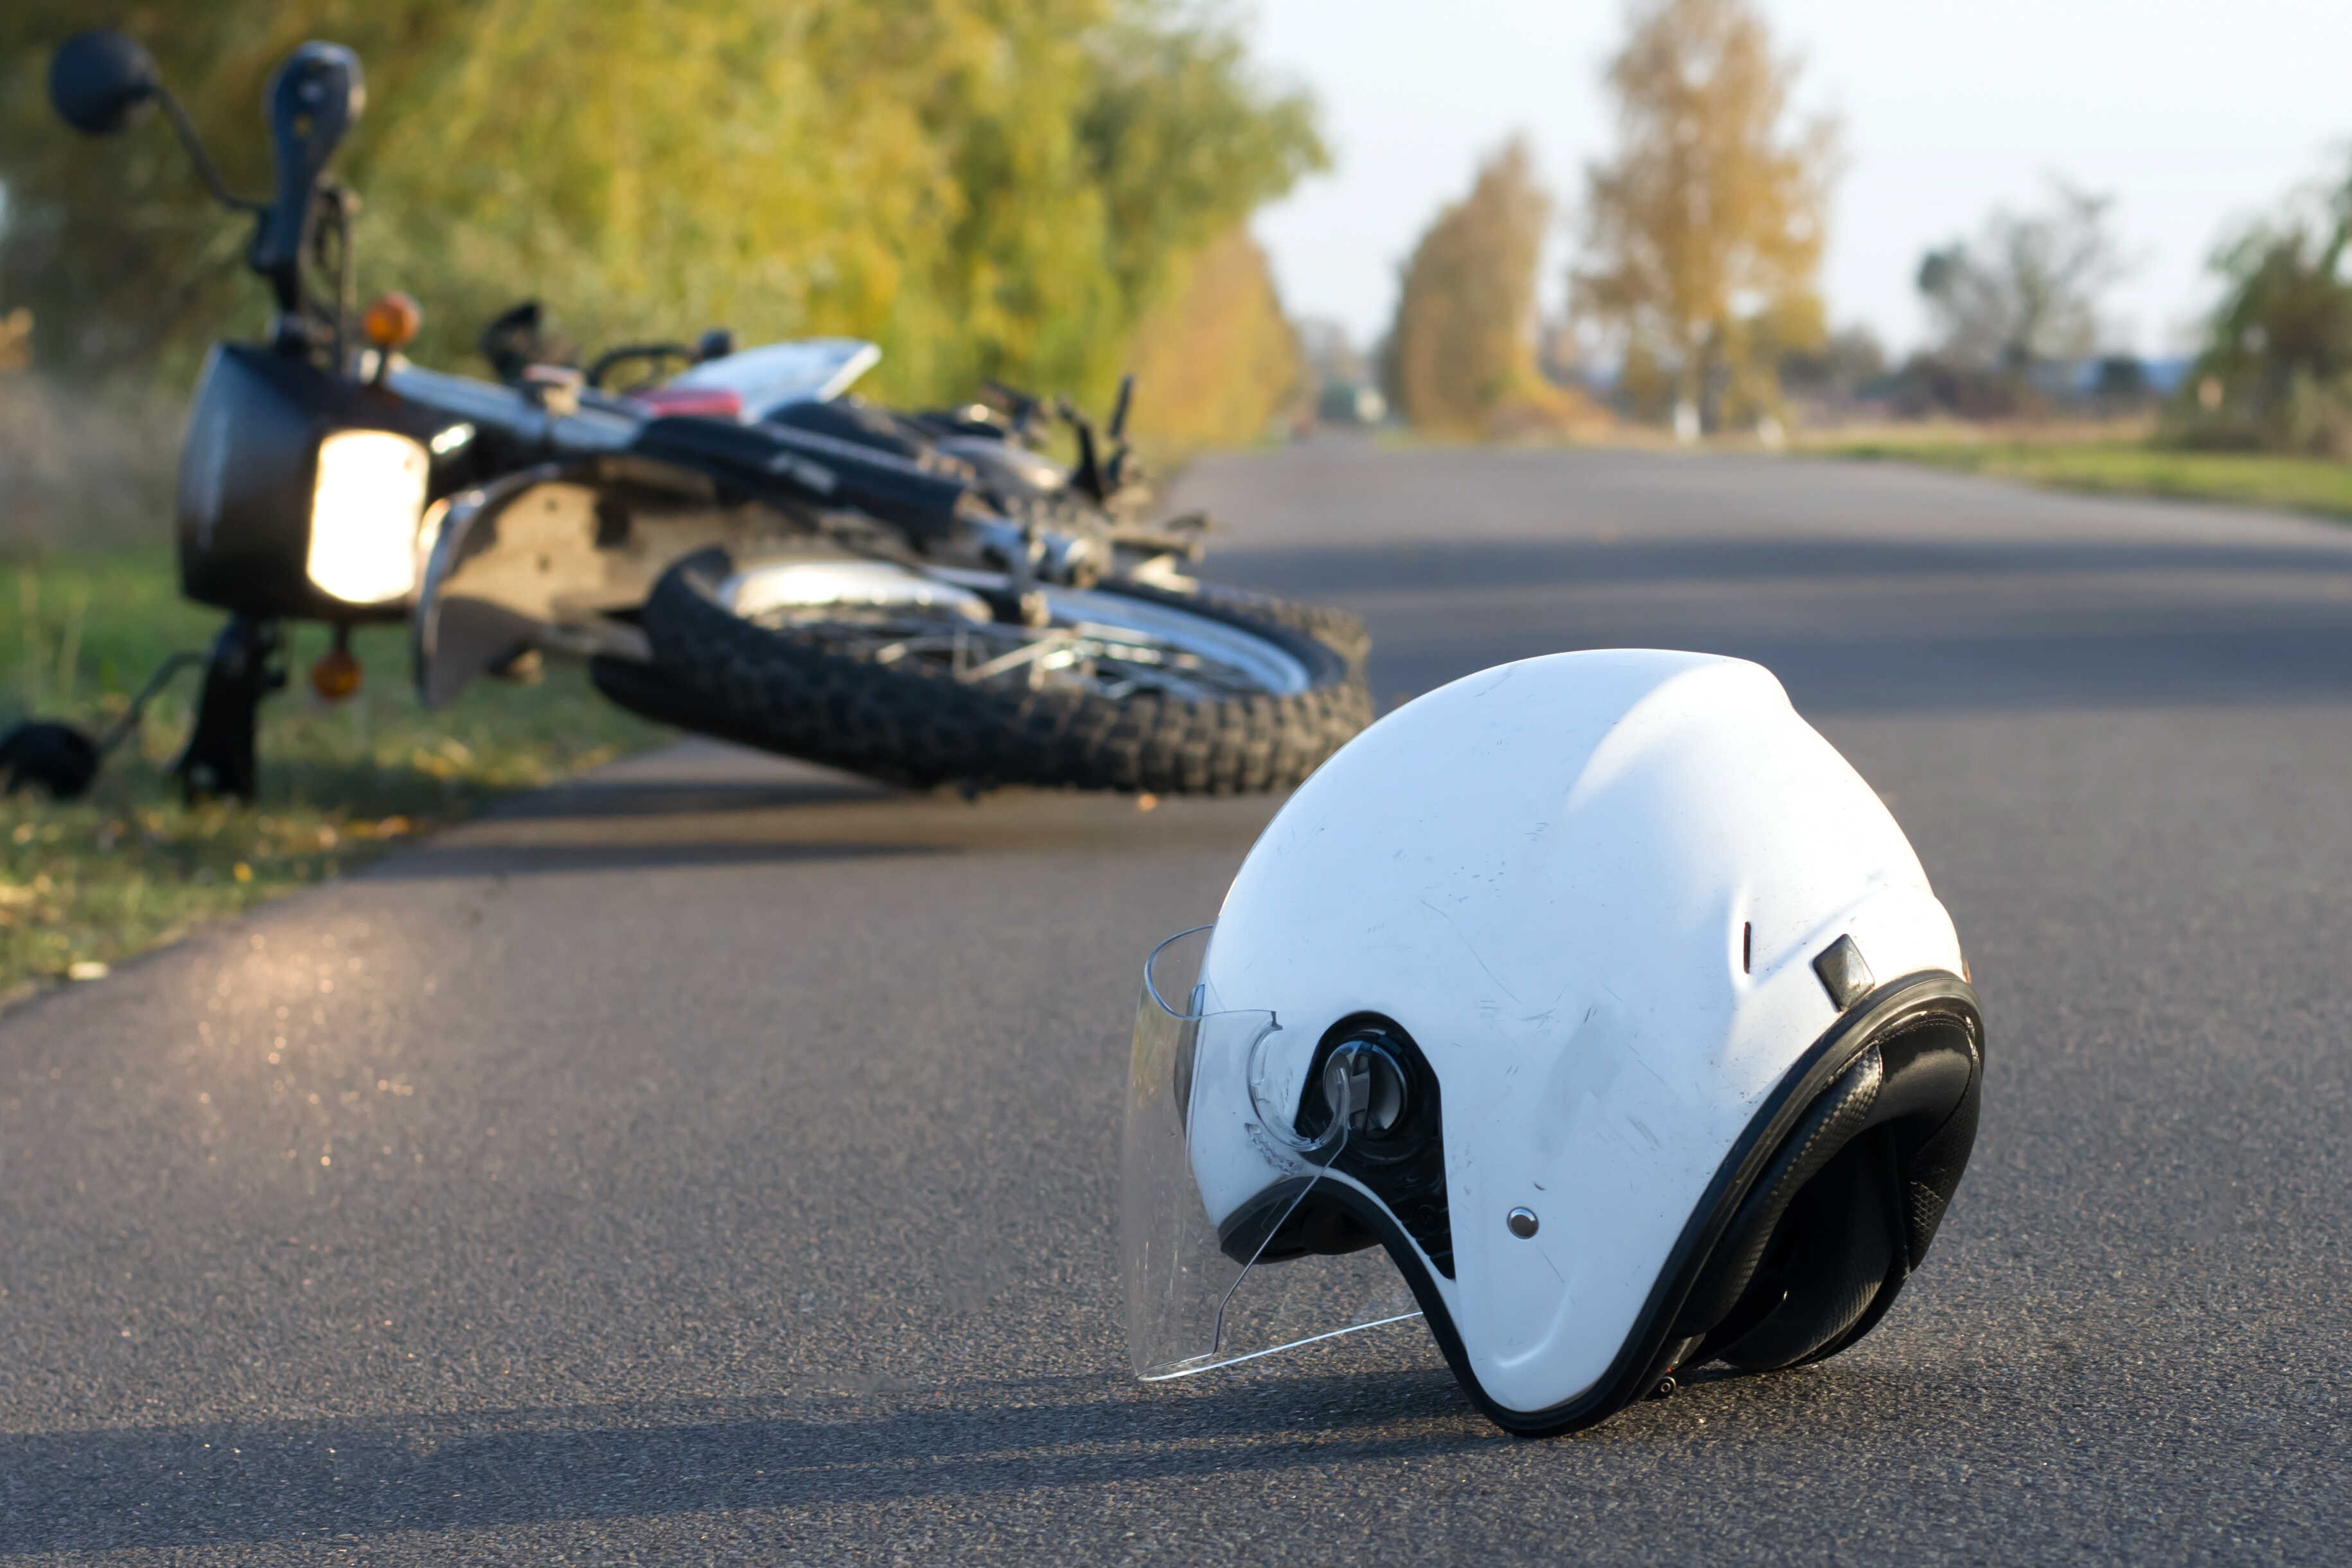 White helmet on asphalt near overturned motorcycle